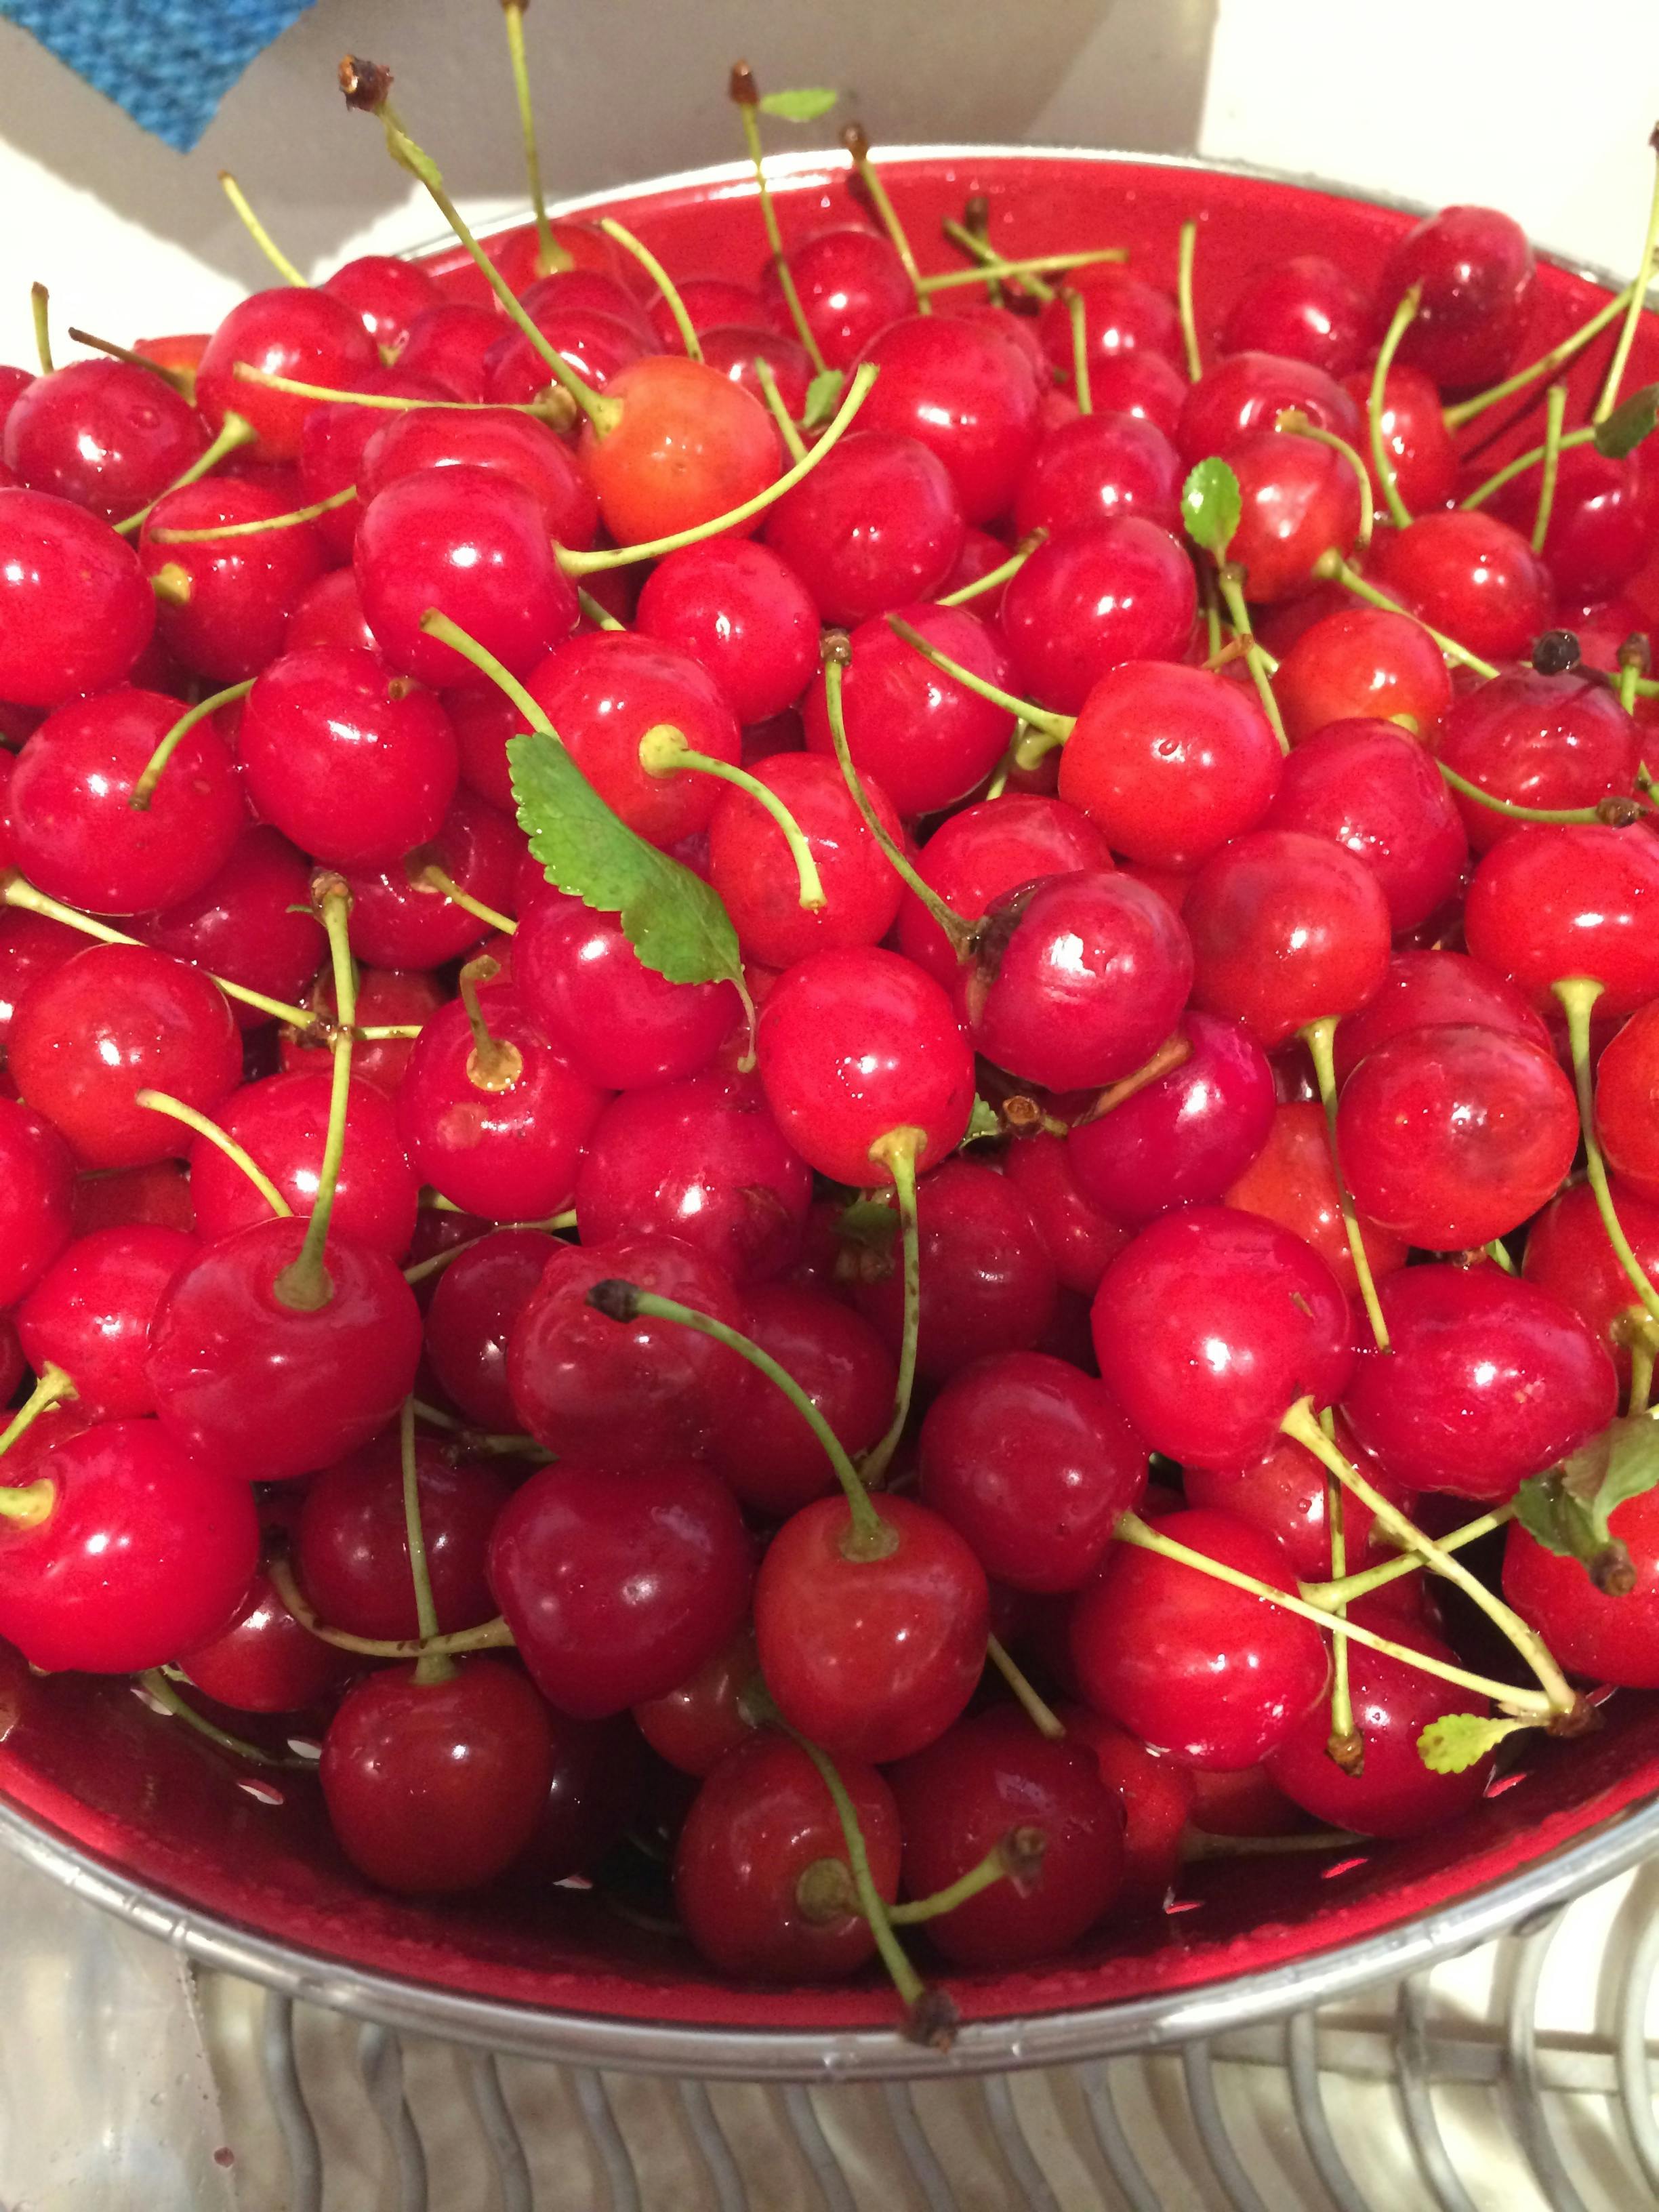 Free stock photo of fresh pickled cherries, sour cherries, tart cherries